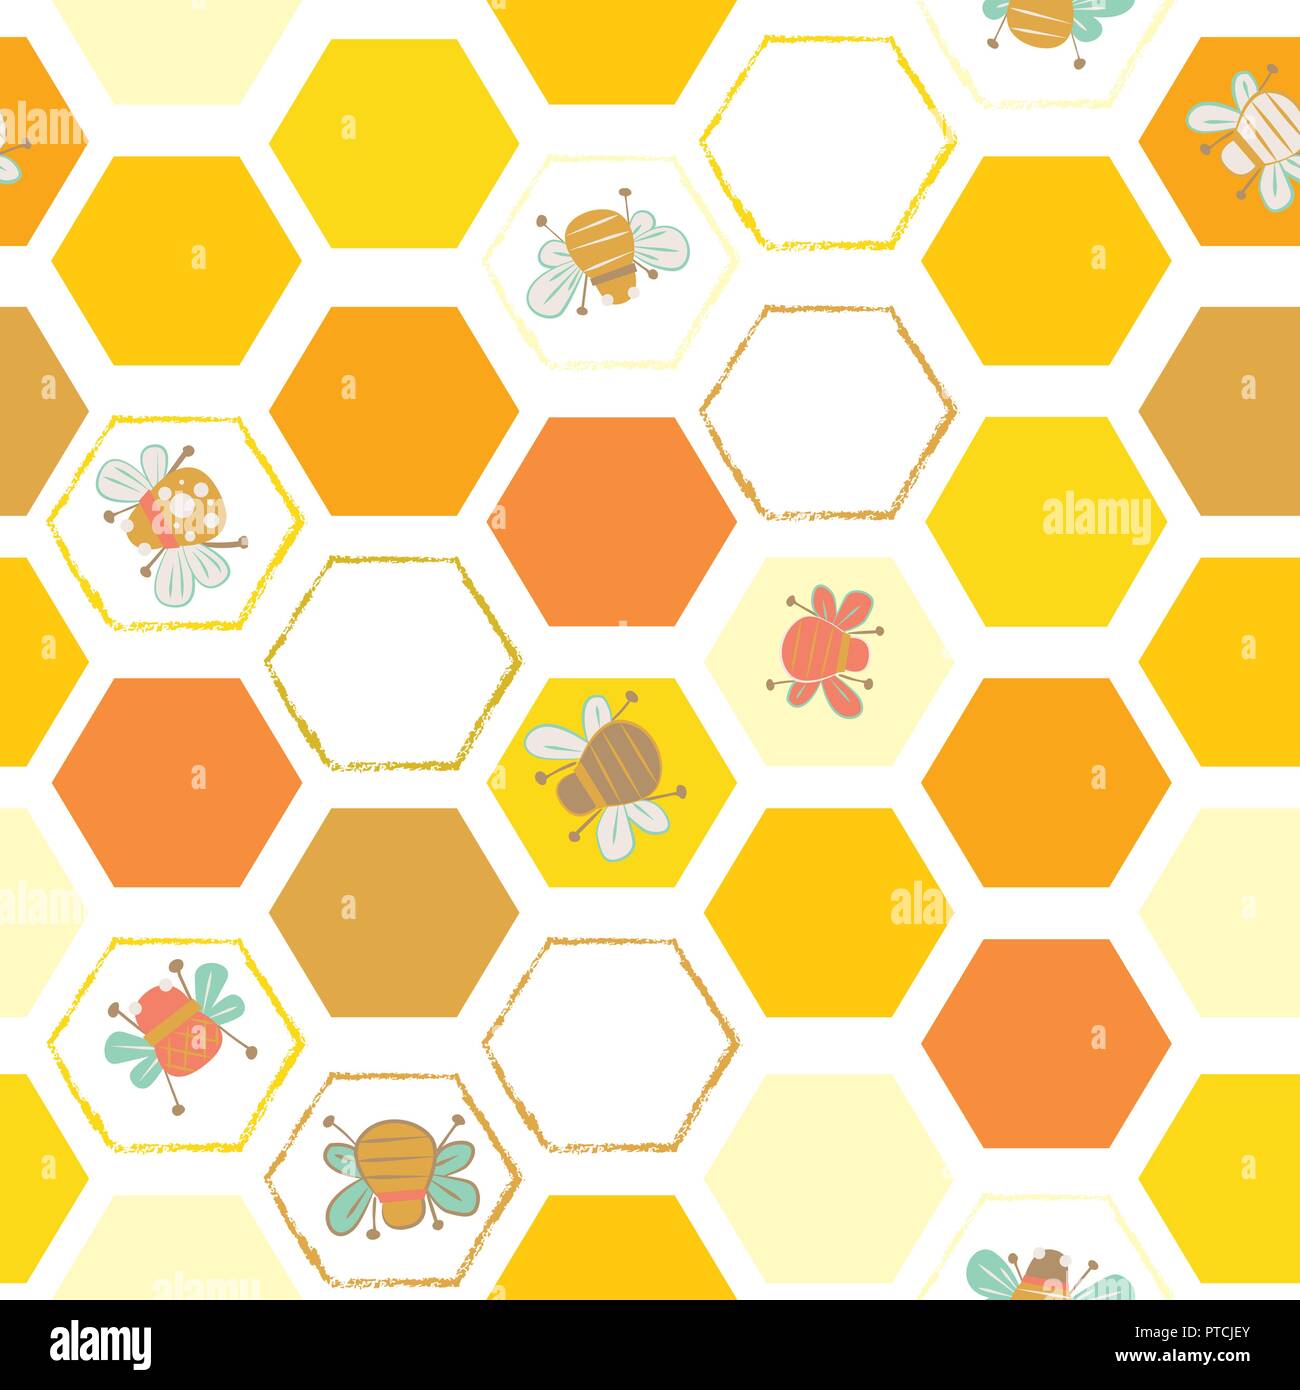 Vector jaune des tuiles hexagonales avec des abeilles de fond transparent. Idéal pour tous les types d'artisanat, d'écran, tissus et patchwork Illustration de Vecteur